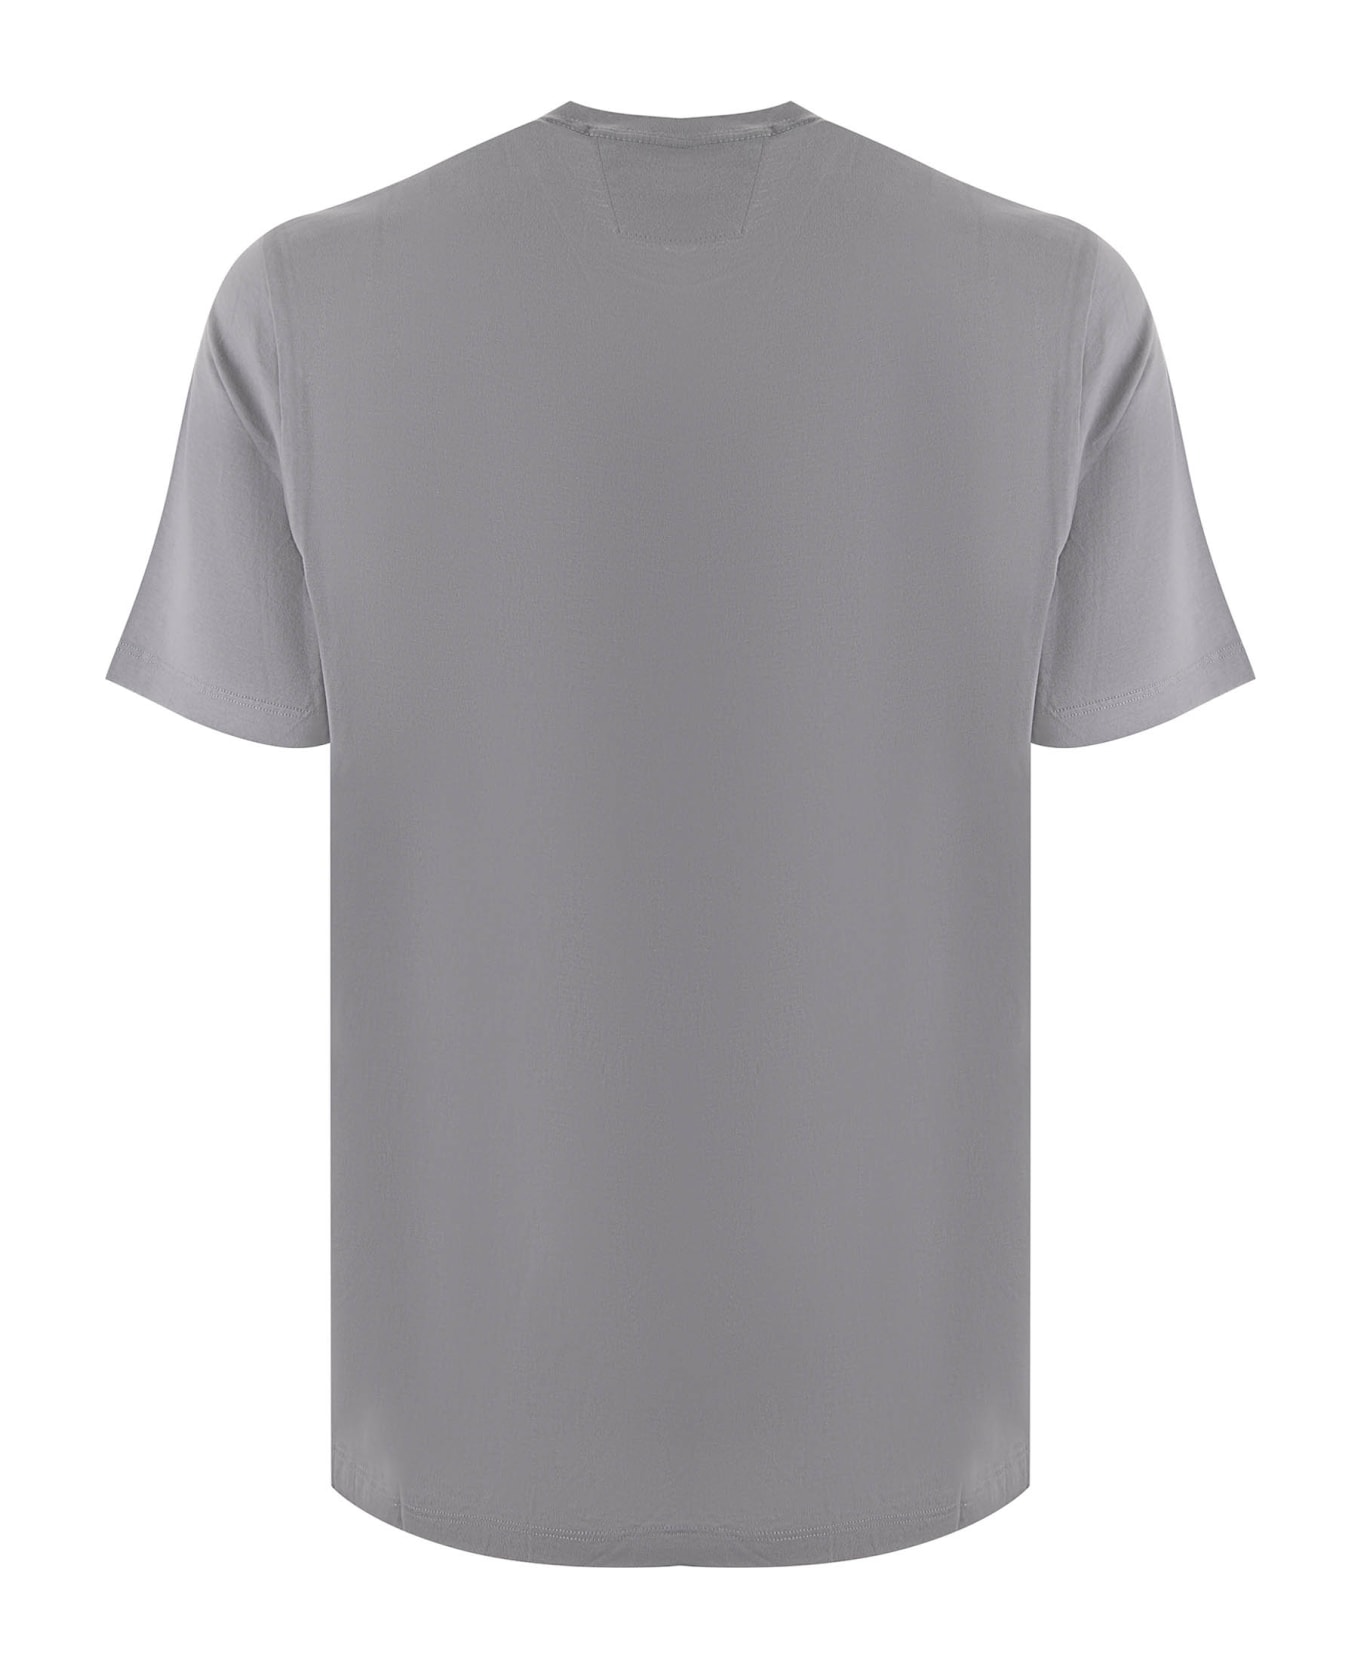 C.P. Company T-shirt - Grigio